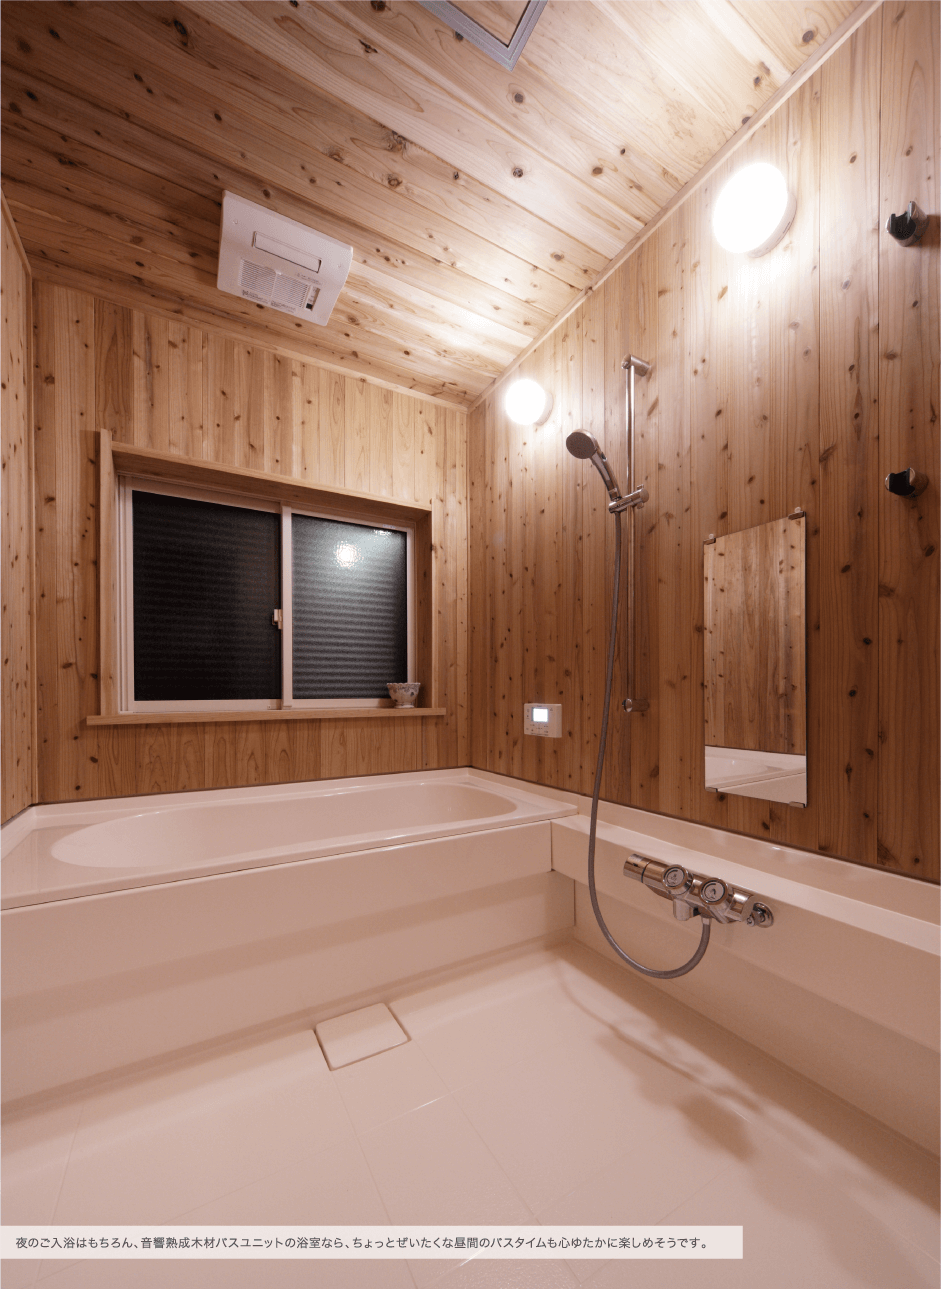 夜のご入浴はもちろん、音響熟成木材バスユニットの浴室なら、ちょっとぜいたくな昼間のバスタイムも心ゆたかに楽しめそうです。